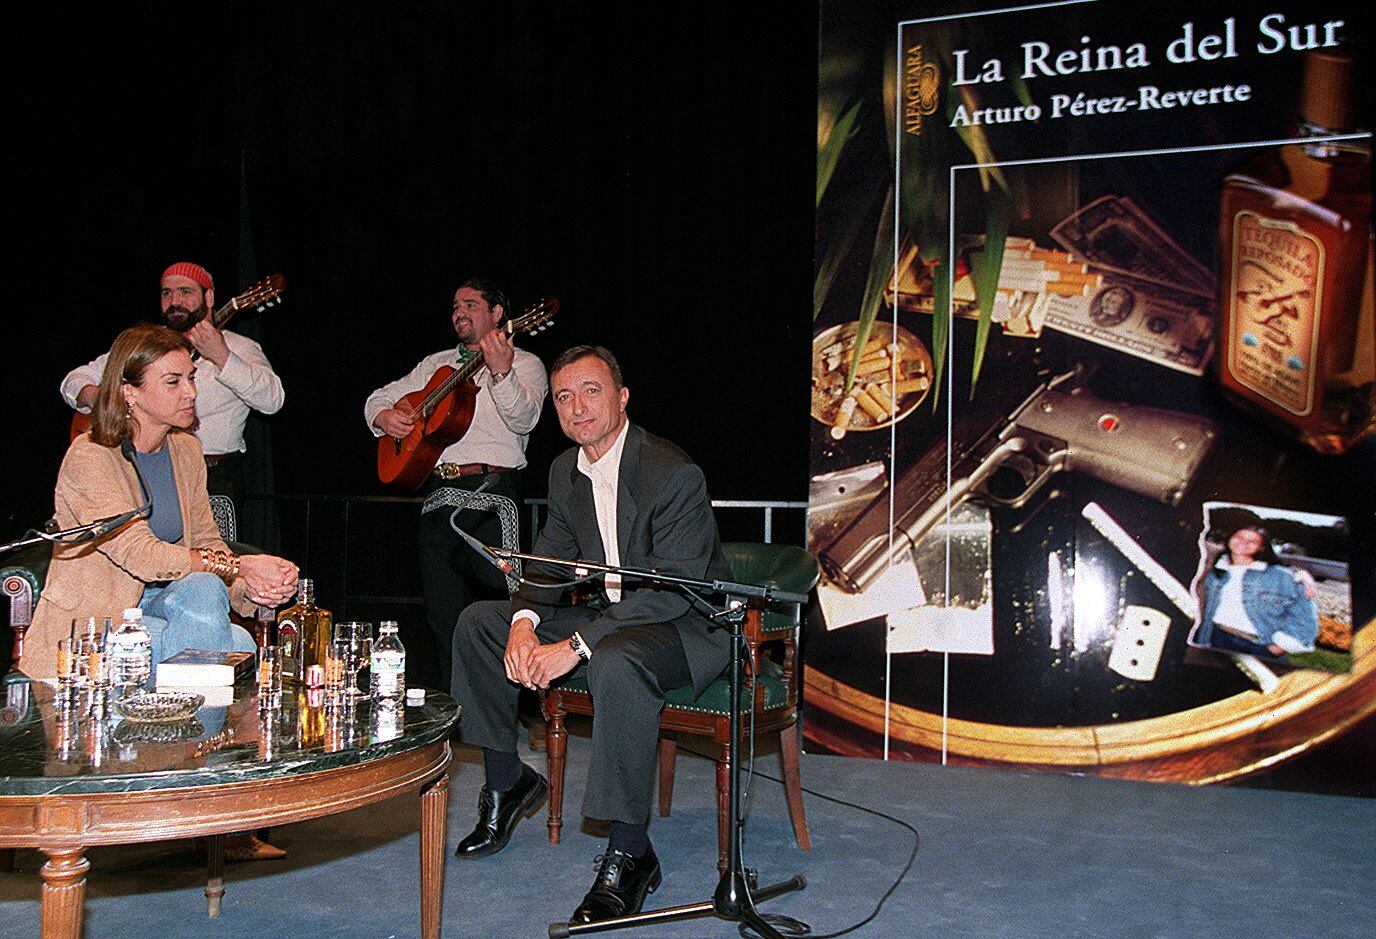 Arturo Pérez-Reverte y Carmen Posadas, en el Círculo de Bellas Artes, presentando 'La Reina del Sur', con mariachis al fondo.